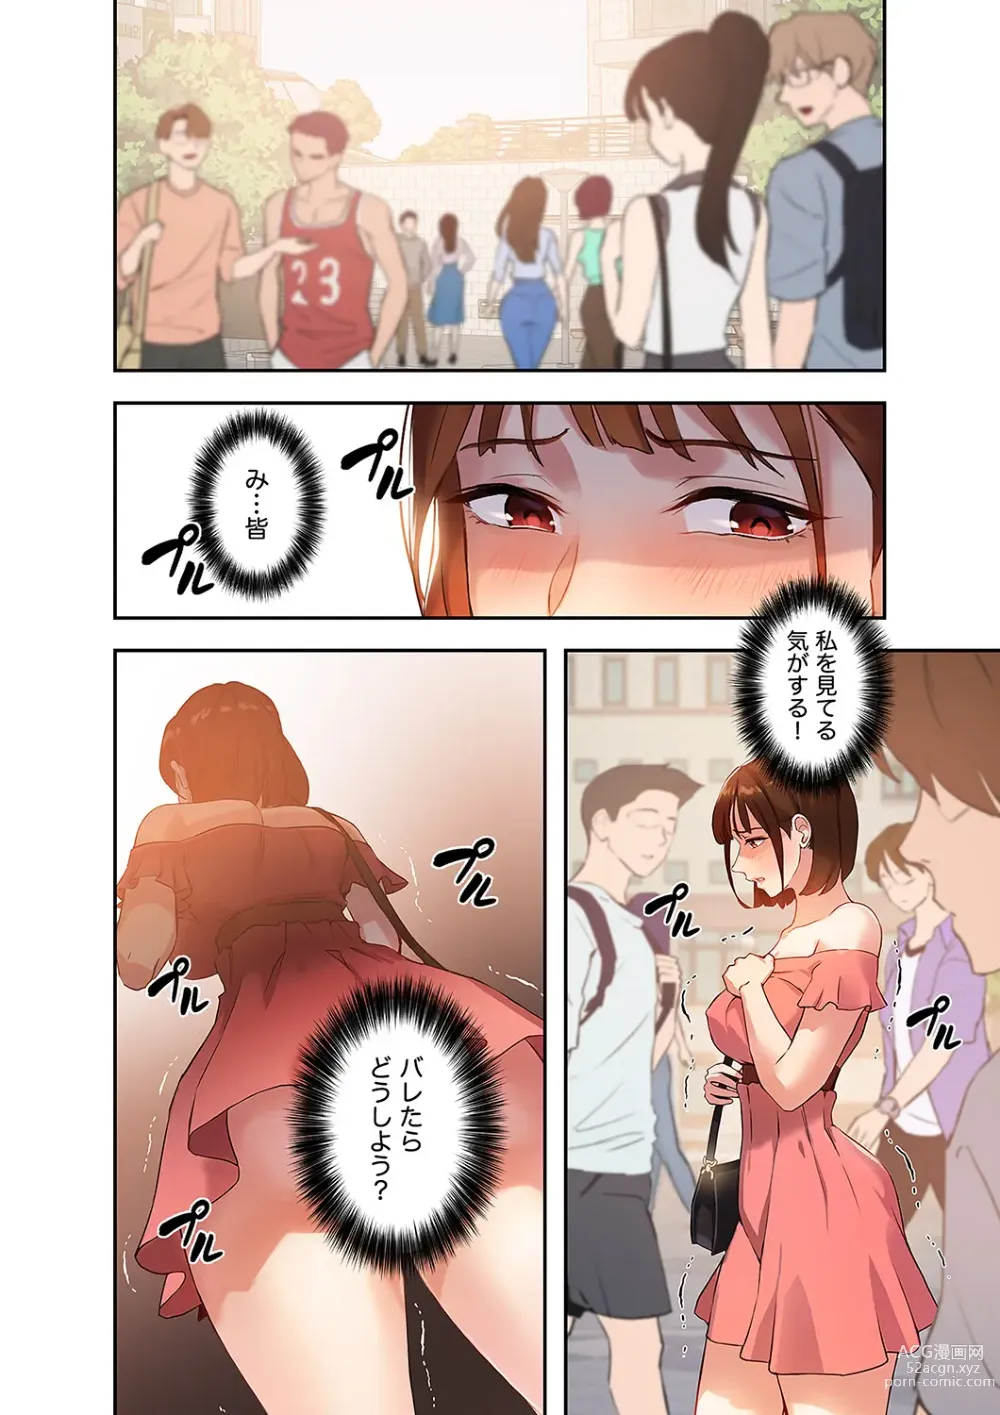 Page 128 of manga Hatachi 01